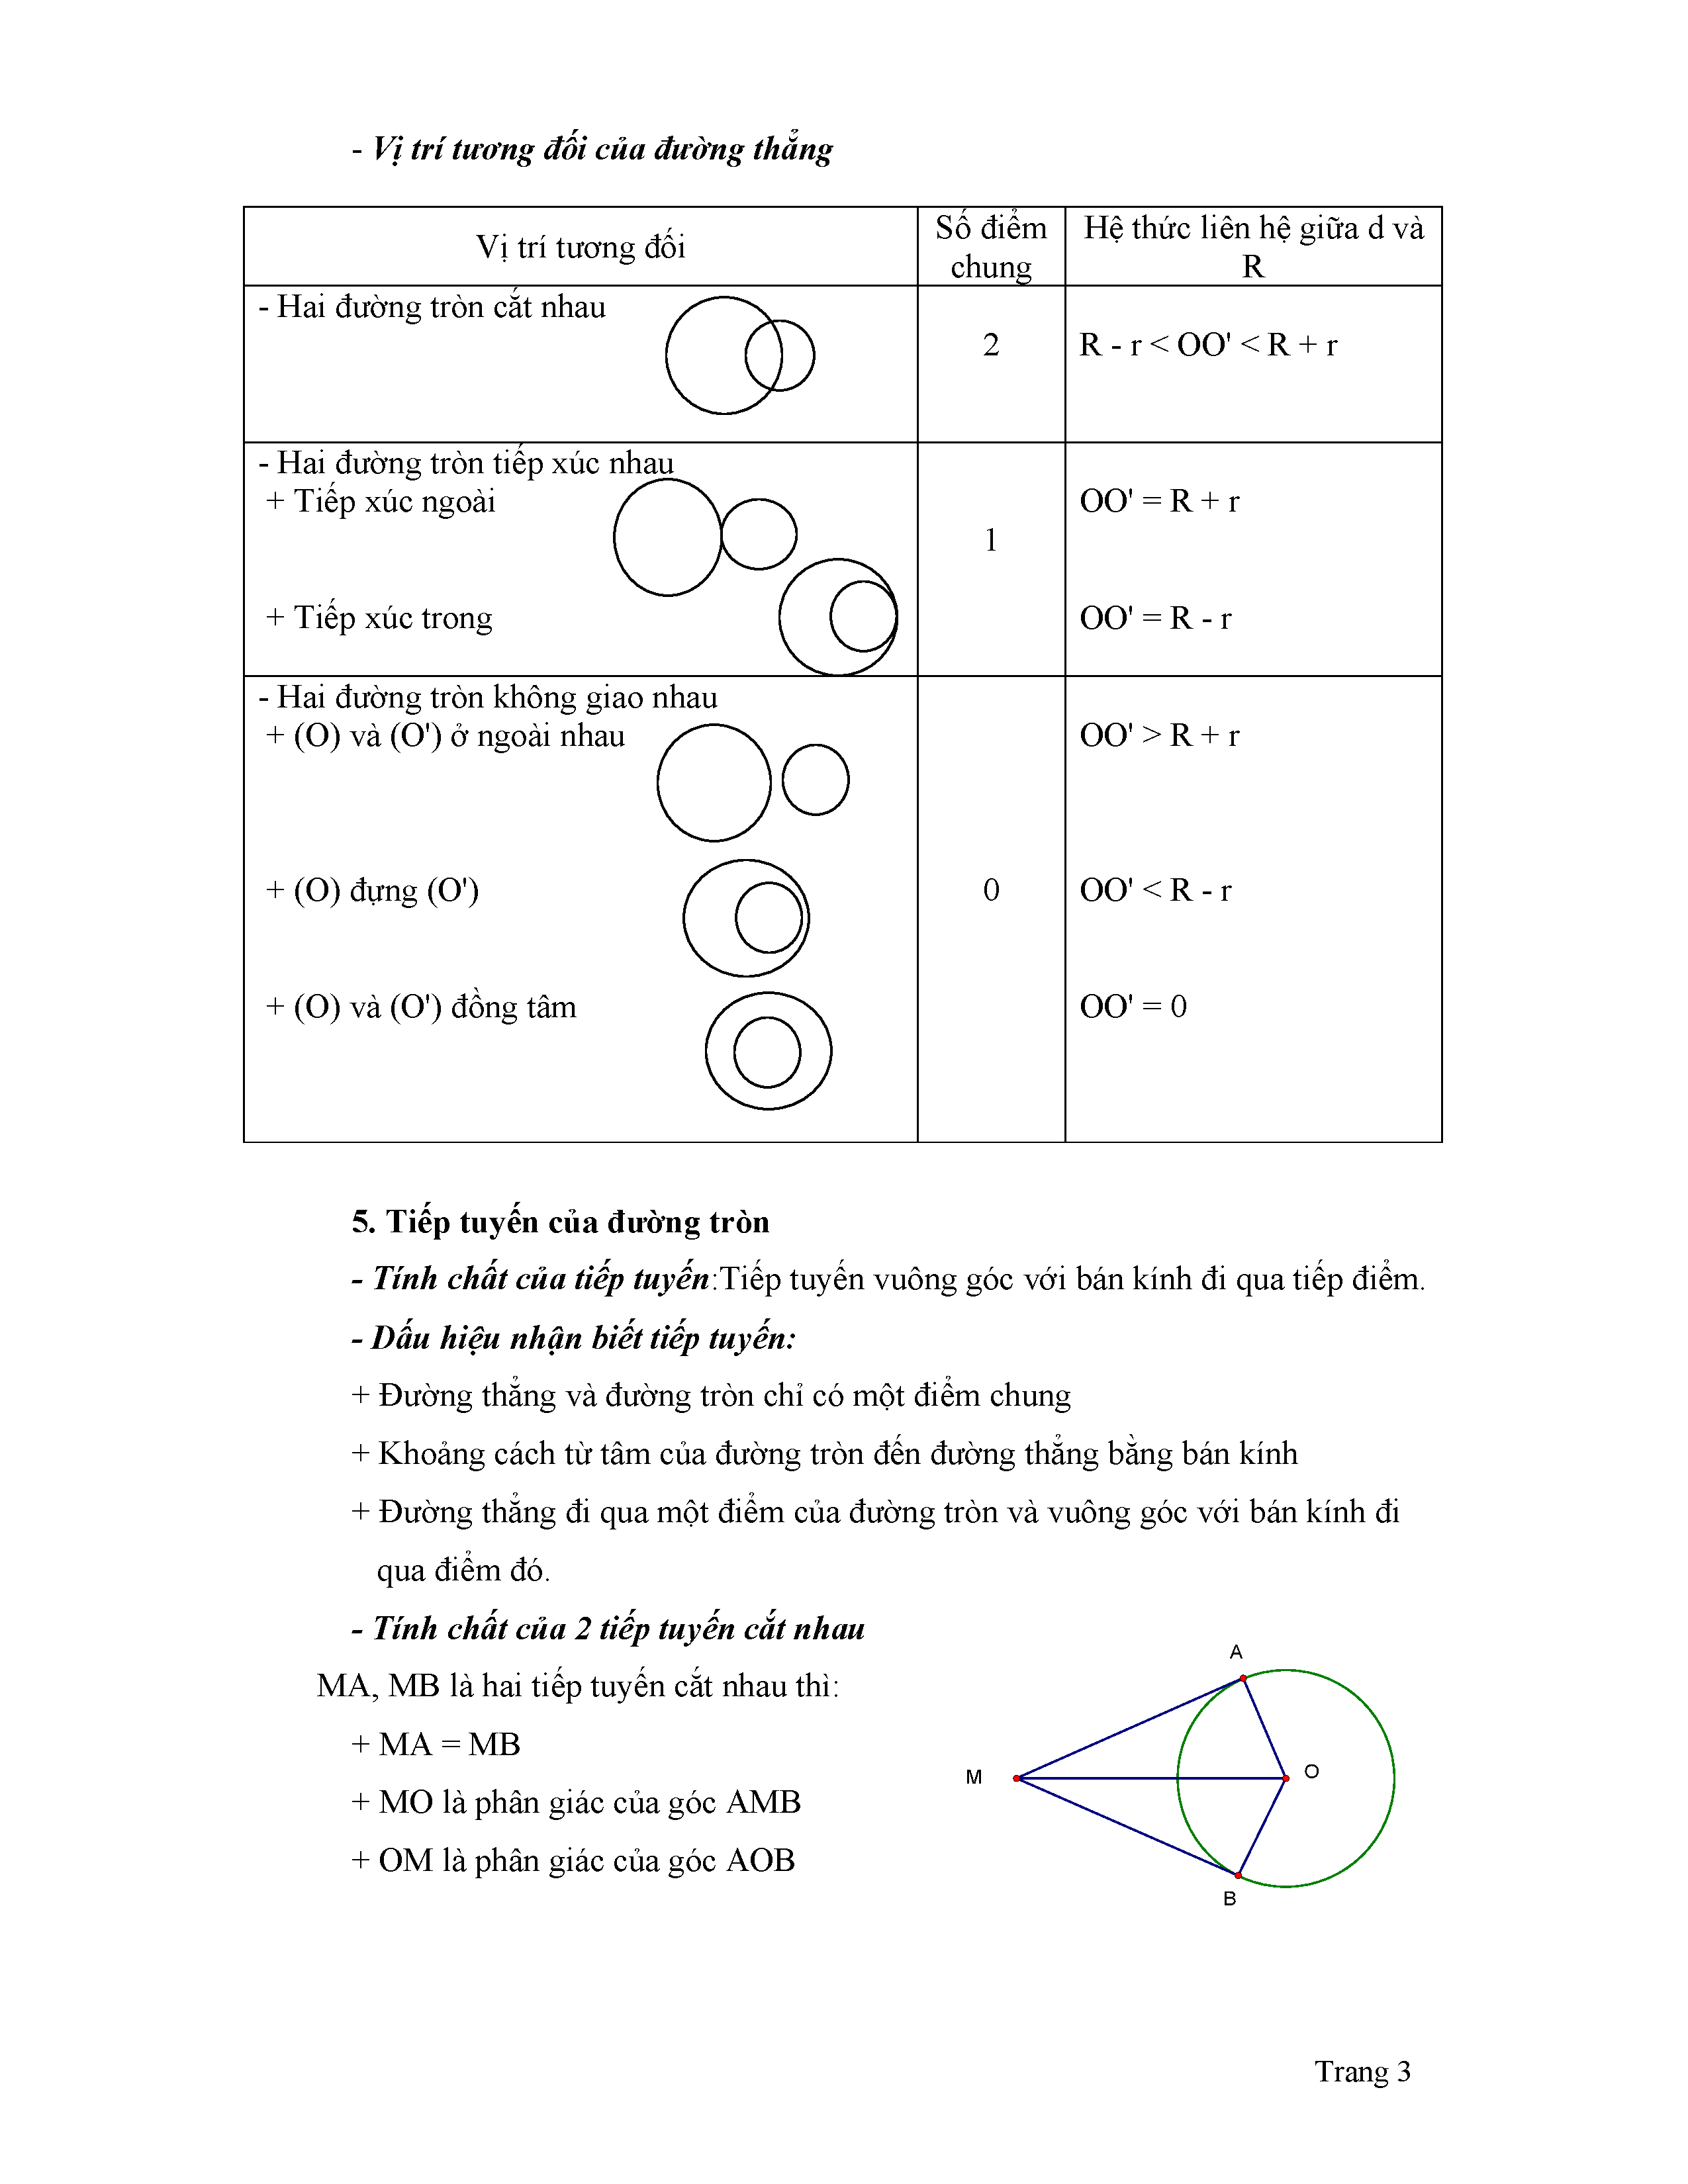 5 cách giải cho một bài toán hình khó thi HK1 lớp 9  Toán lớp 9